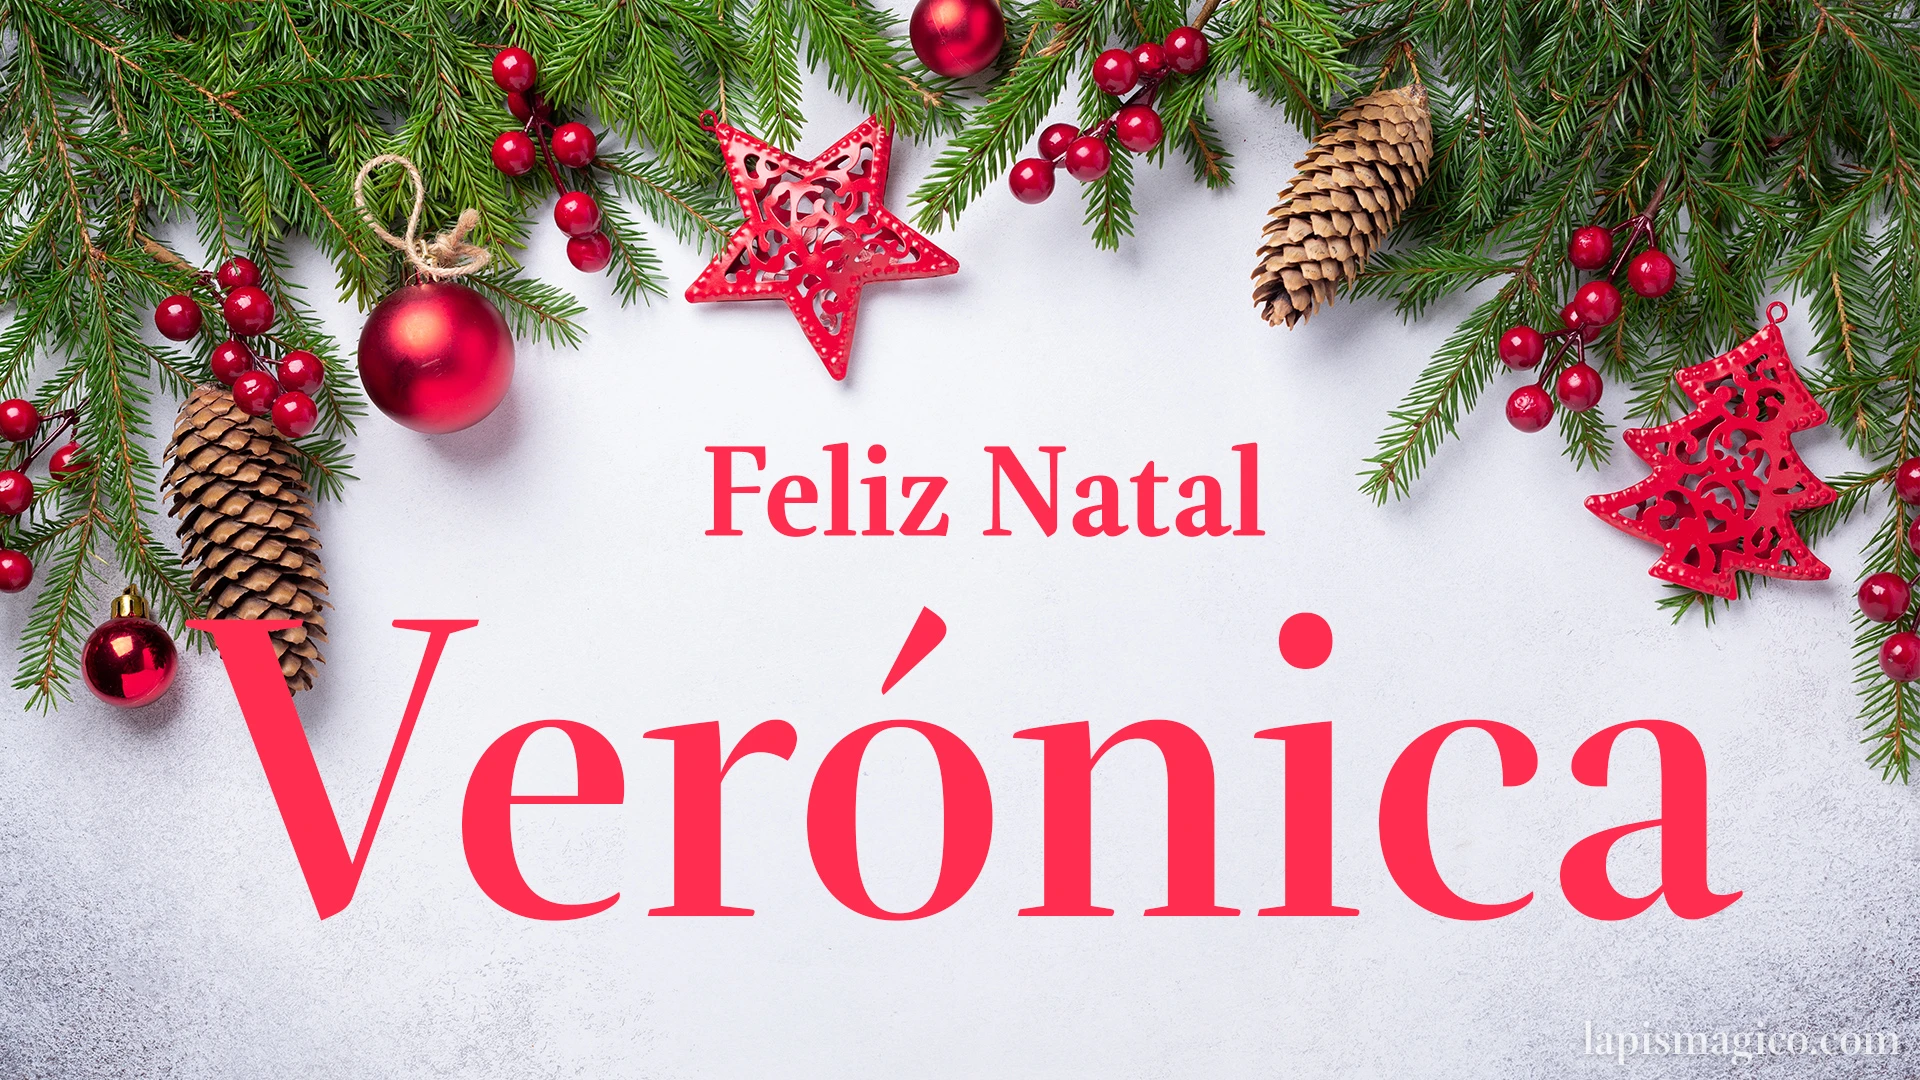 Oh Verónica, cinco postais de Feliz Natal Postal com o teu nome